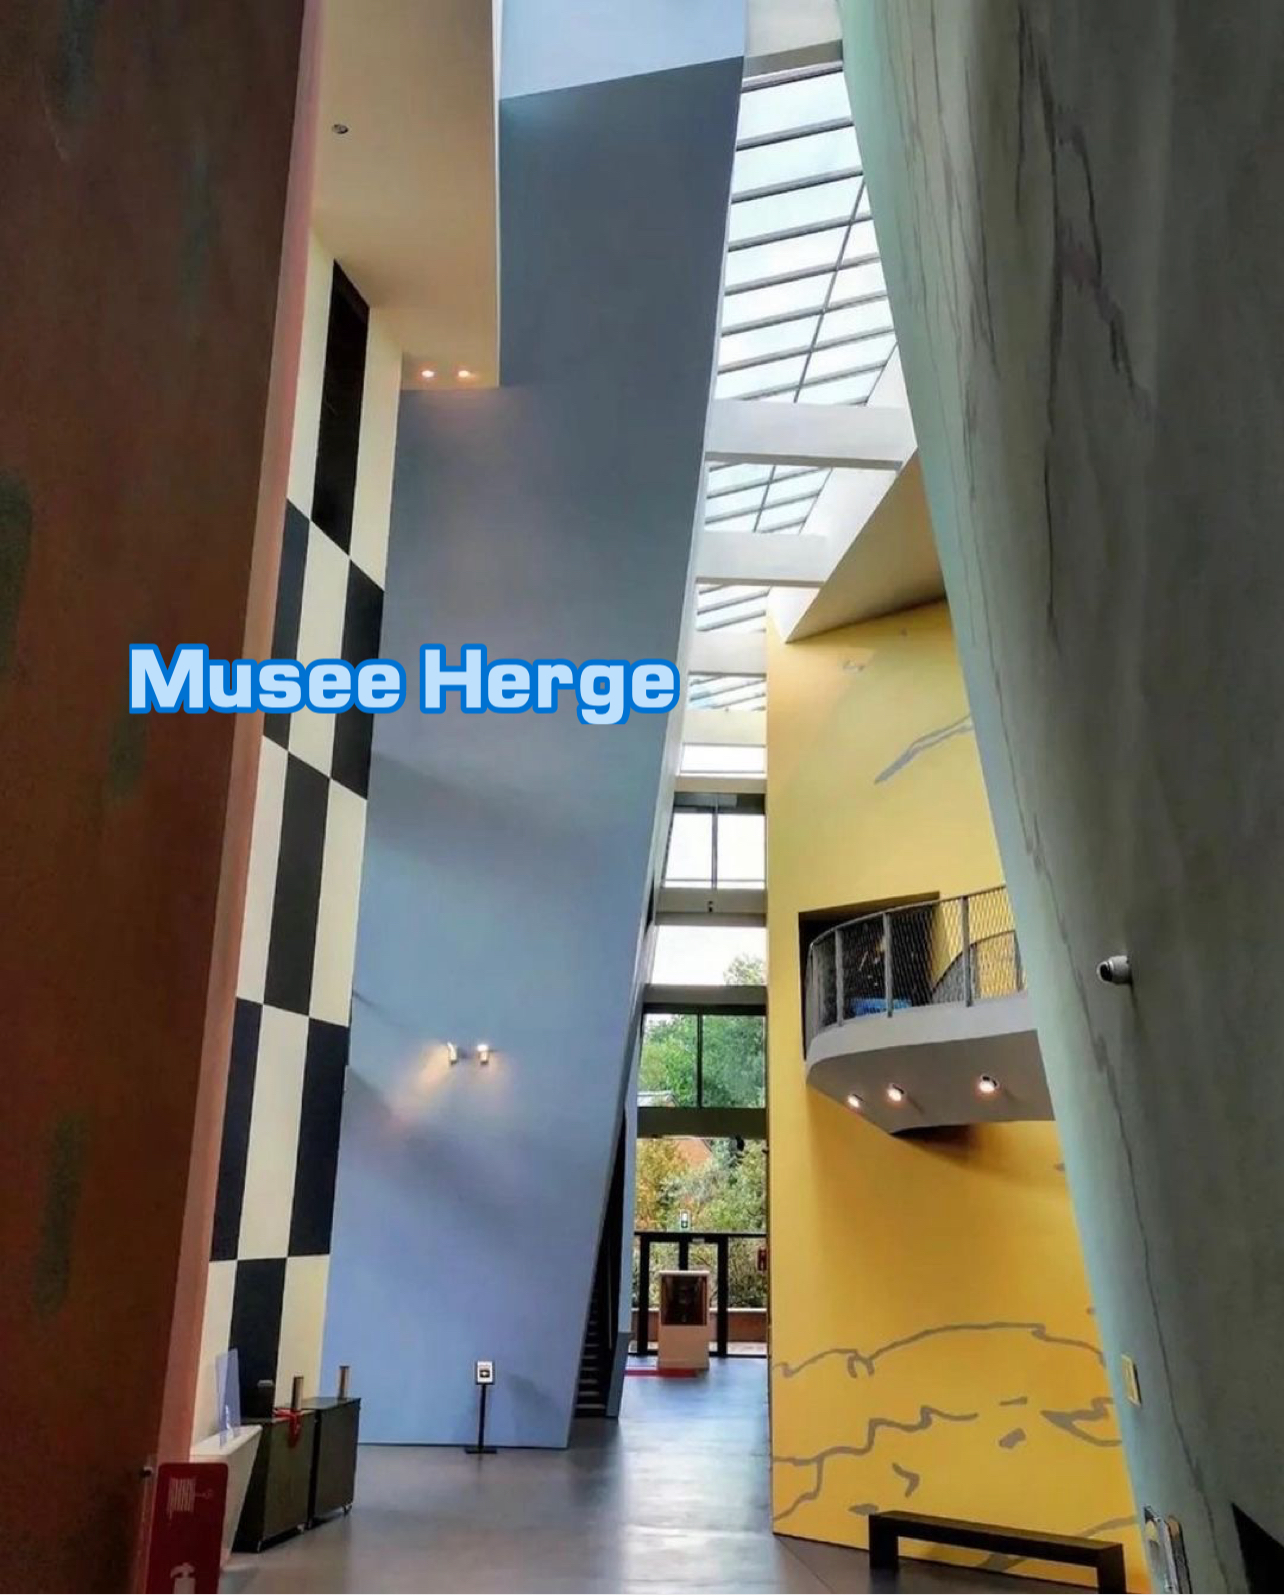 Musee Herge